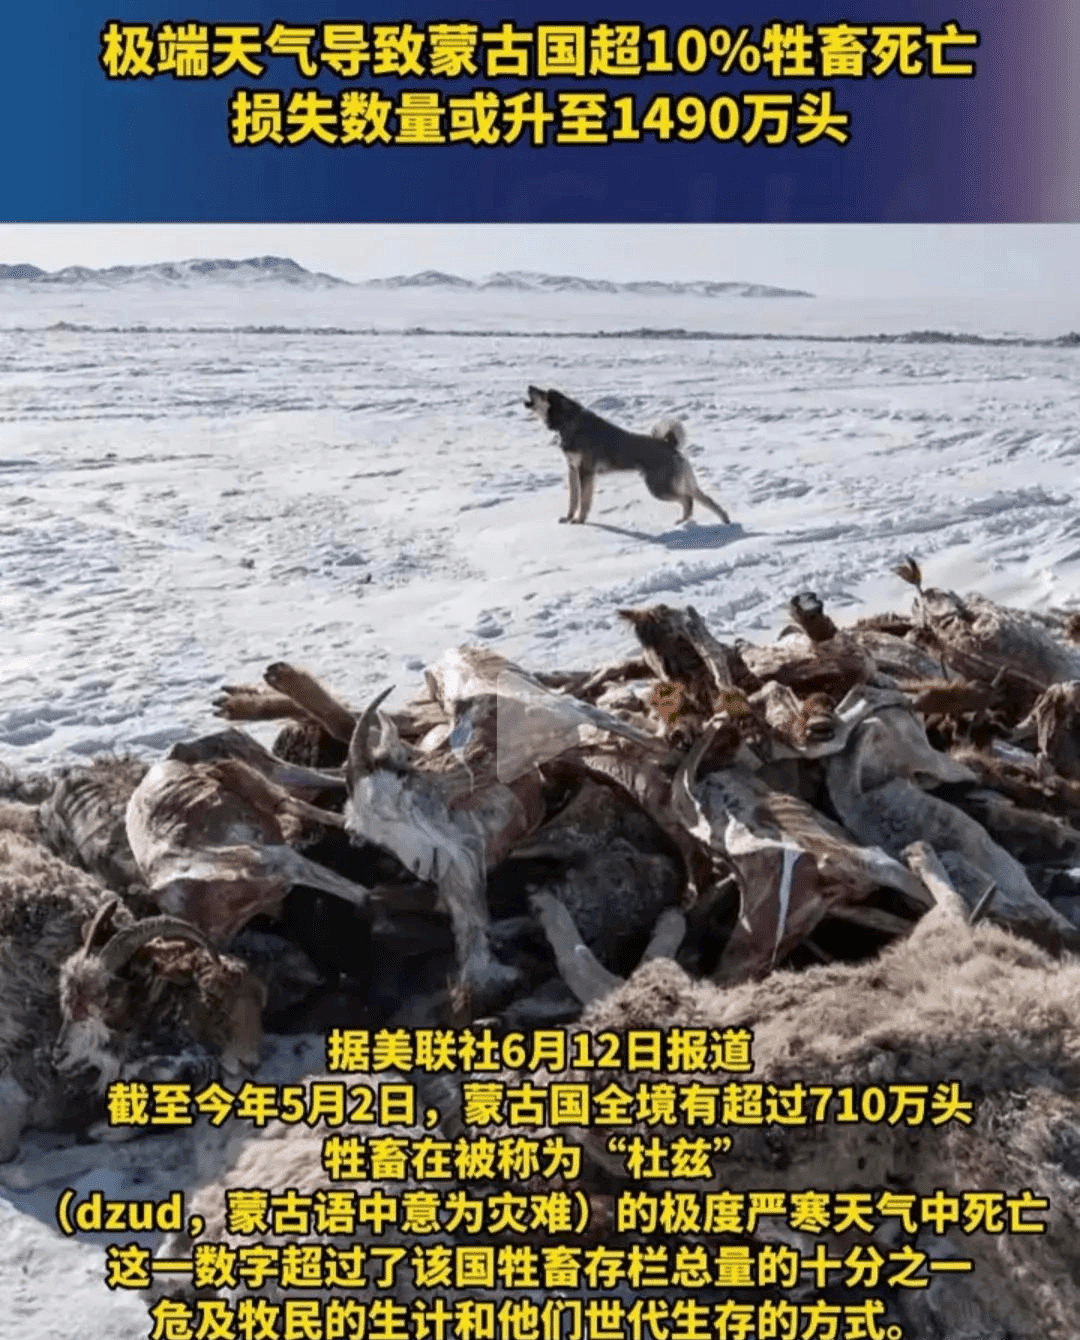 闹大了,极端天气或致蒙古国超千万头牲畜死亡,评论区网友炸锅!